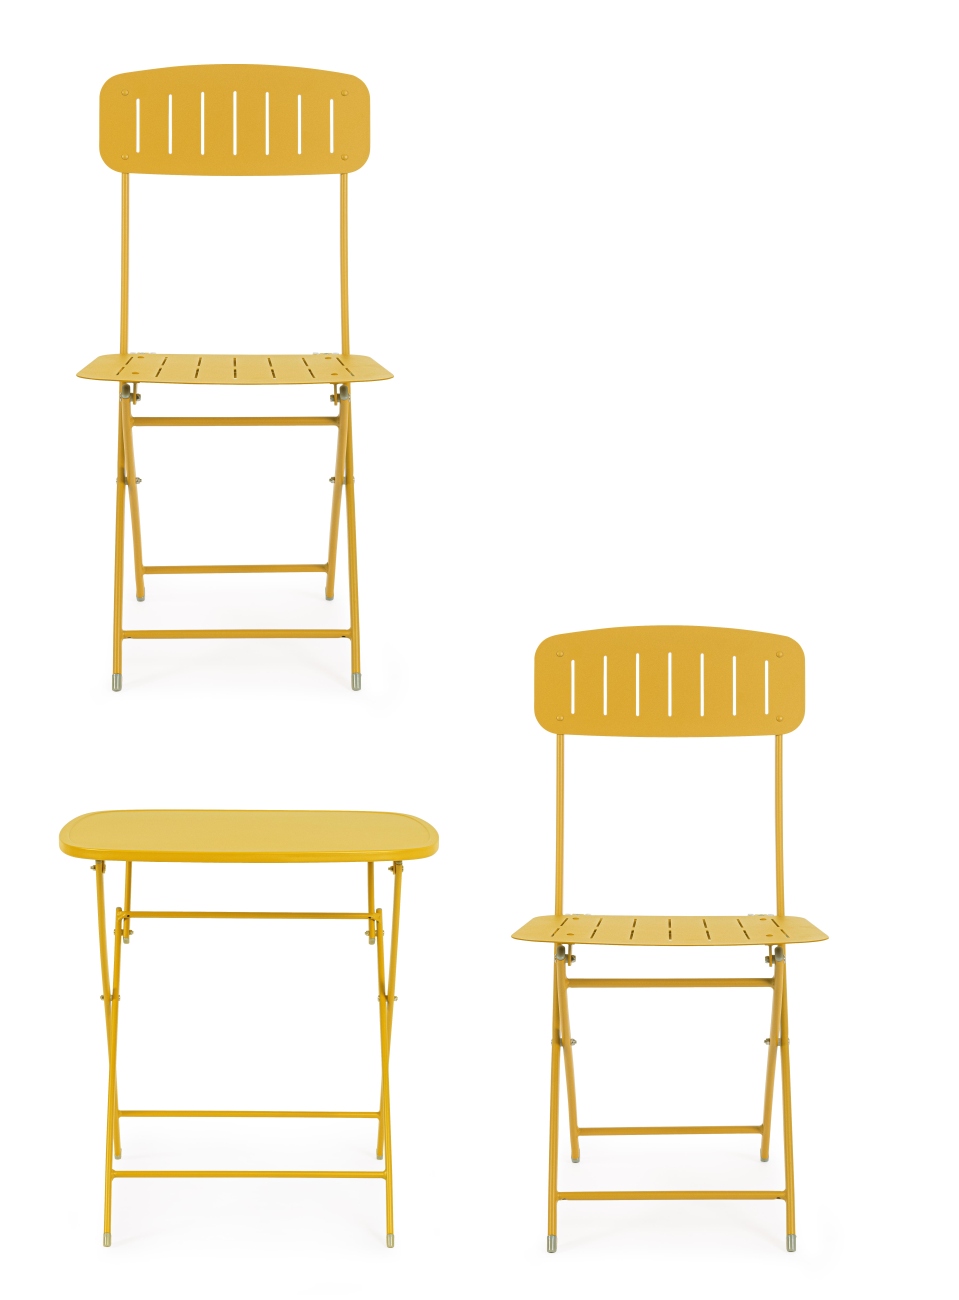 Das Garten-Set Yvonne überzeugt mit seinem modernen Design. Gefertigt wurde es aus Metall, welcher einen gelben Farbton besitzt. Das Gestell ist auch aus Metall und hat eine gelbe Farbe. Das Set besteht aus zwei Stühlen und einem Tisch.